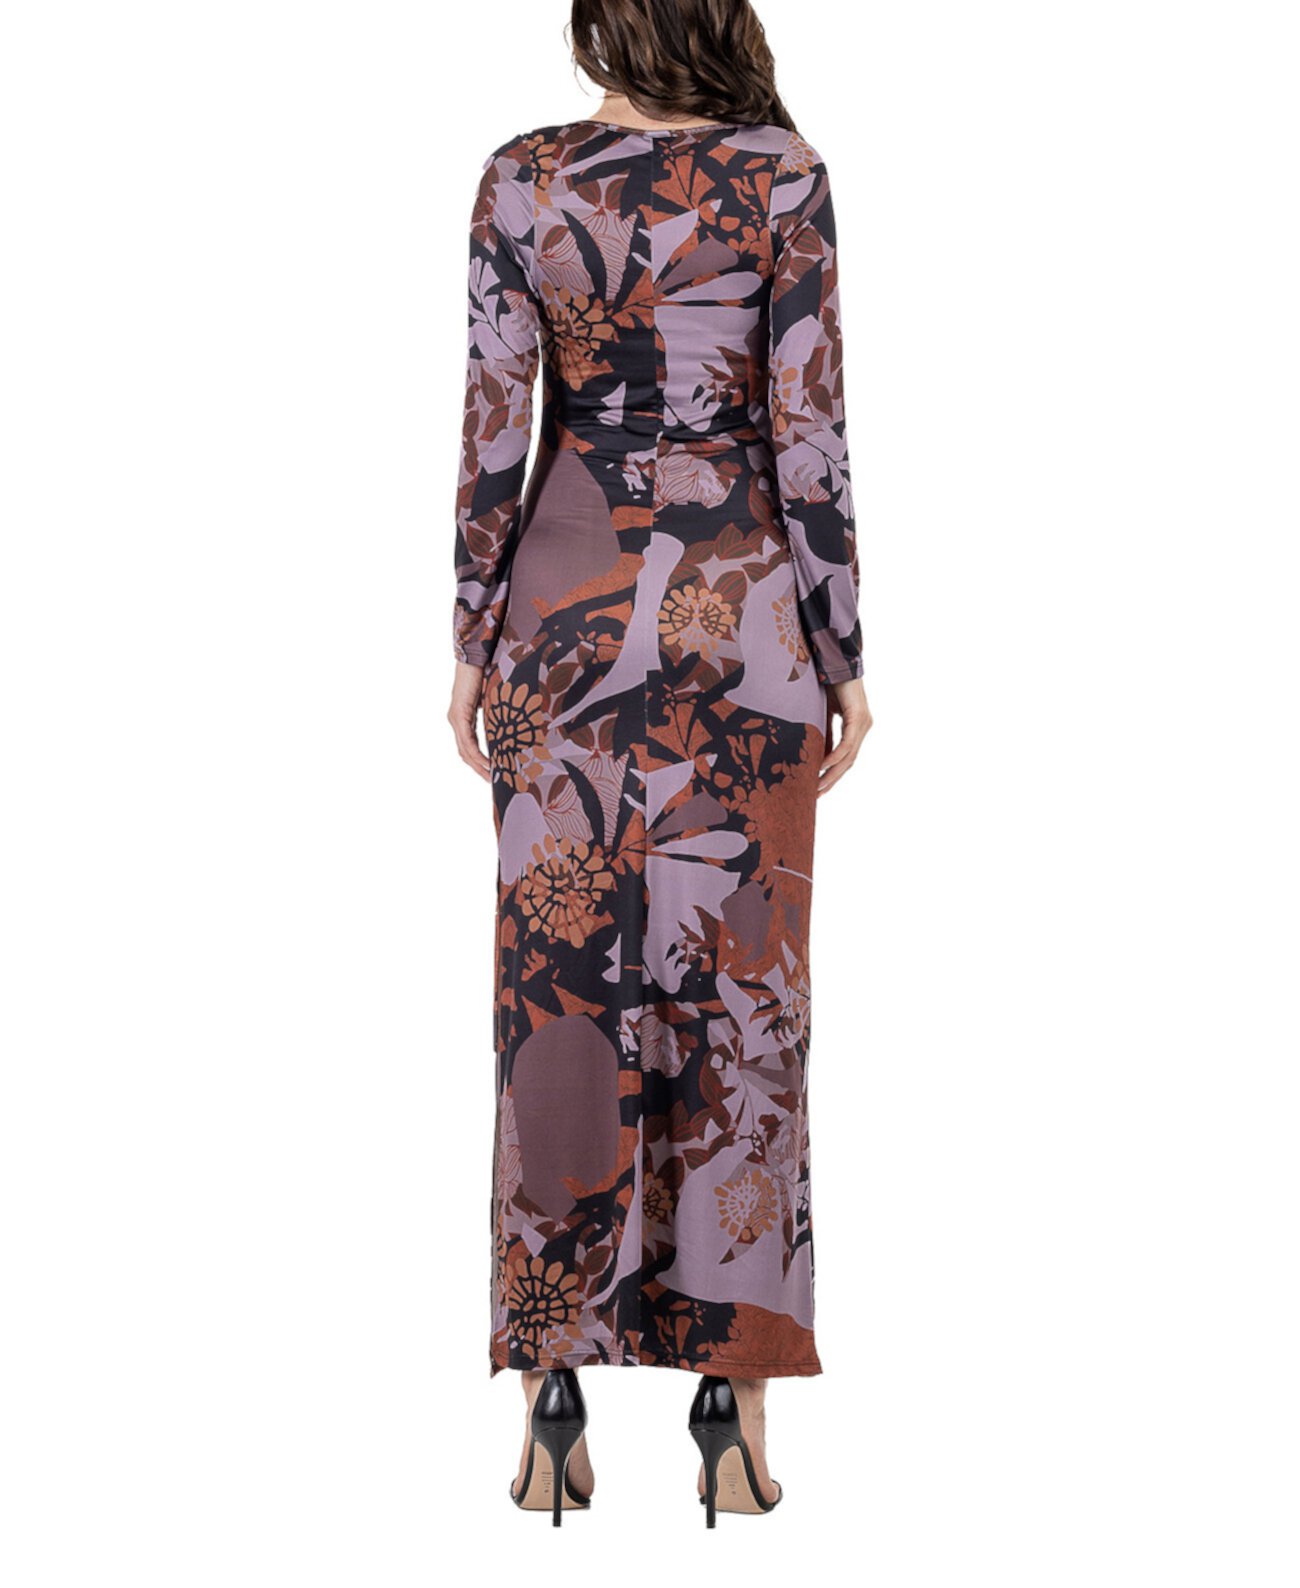 Женское платье макси с длинным рукавом с цветочным принтом и боковым разрезом 24Seven Comfort